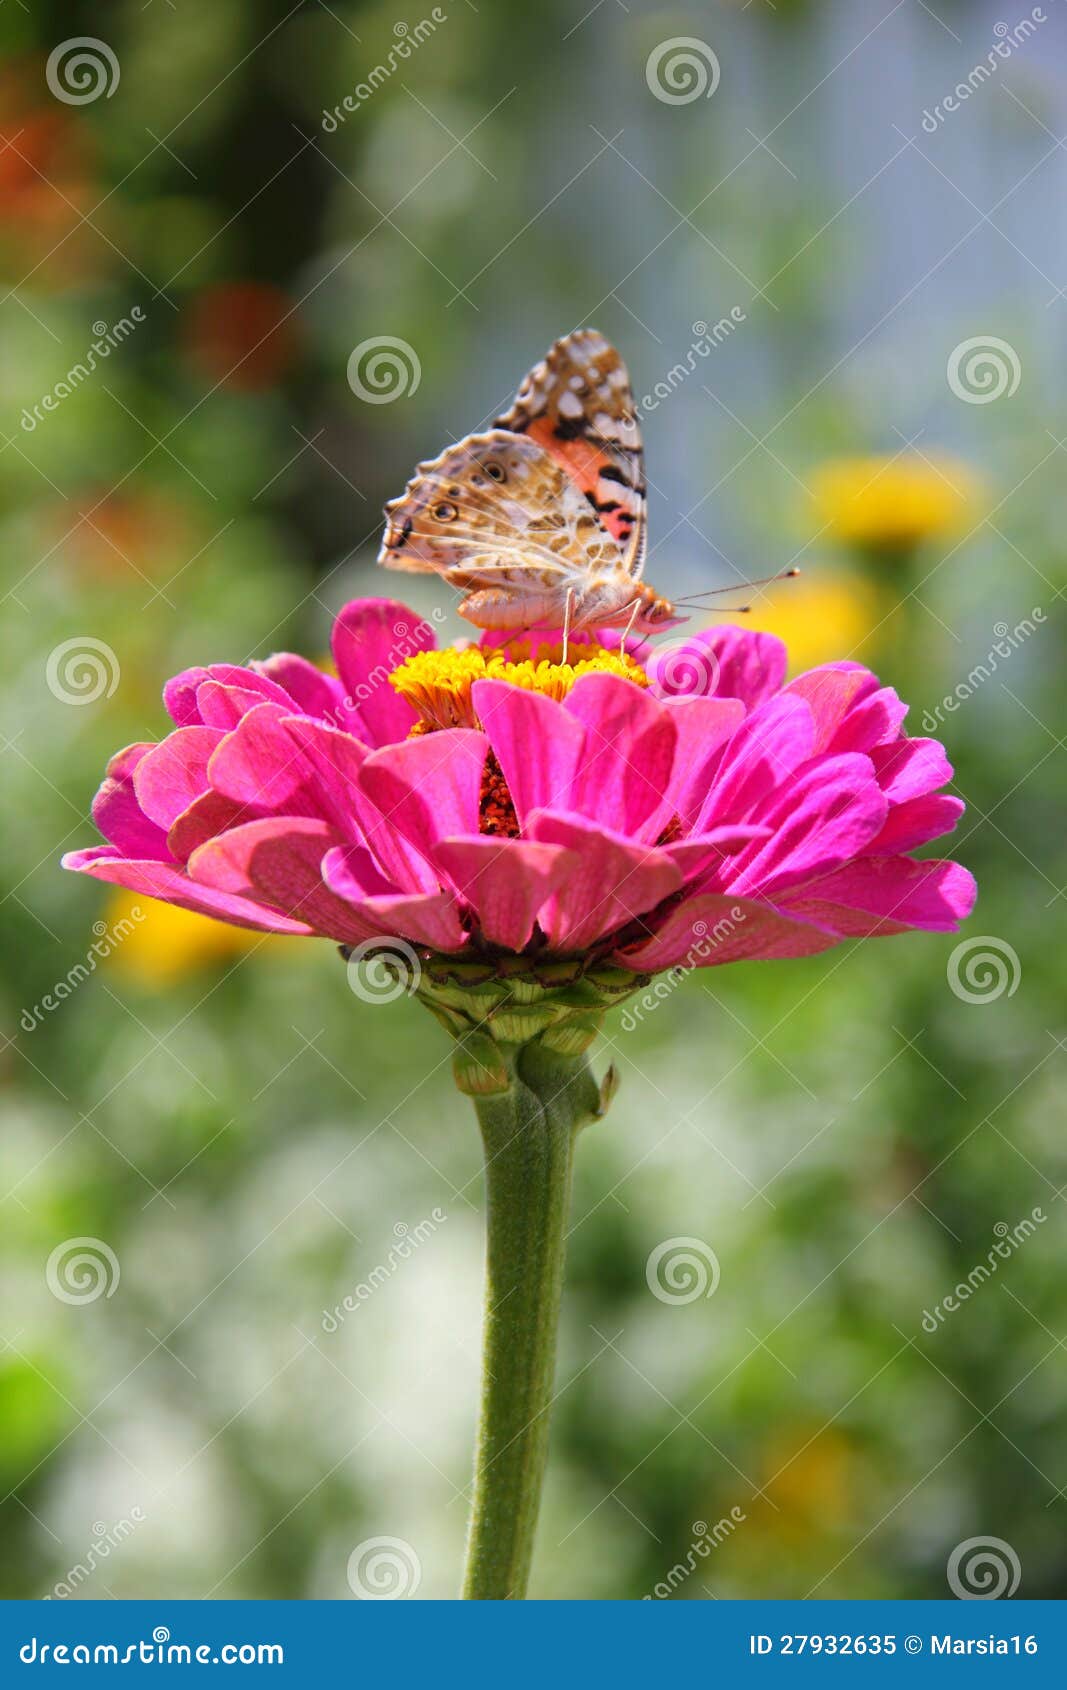 butterfly on zinnia flower